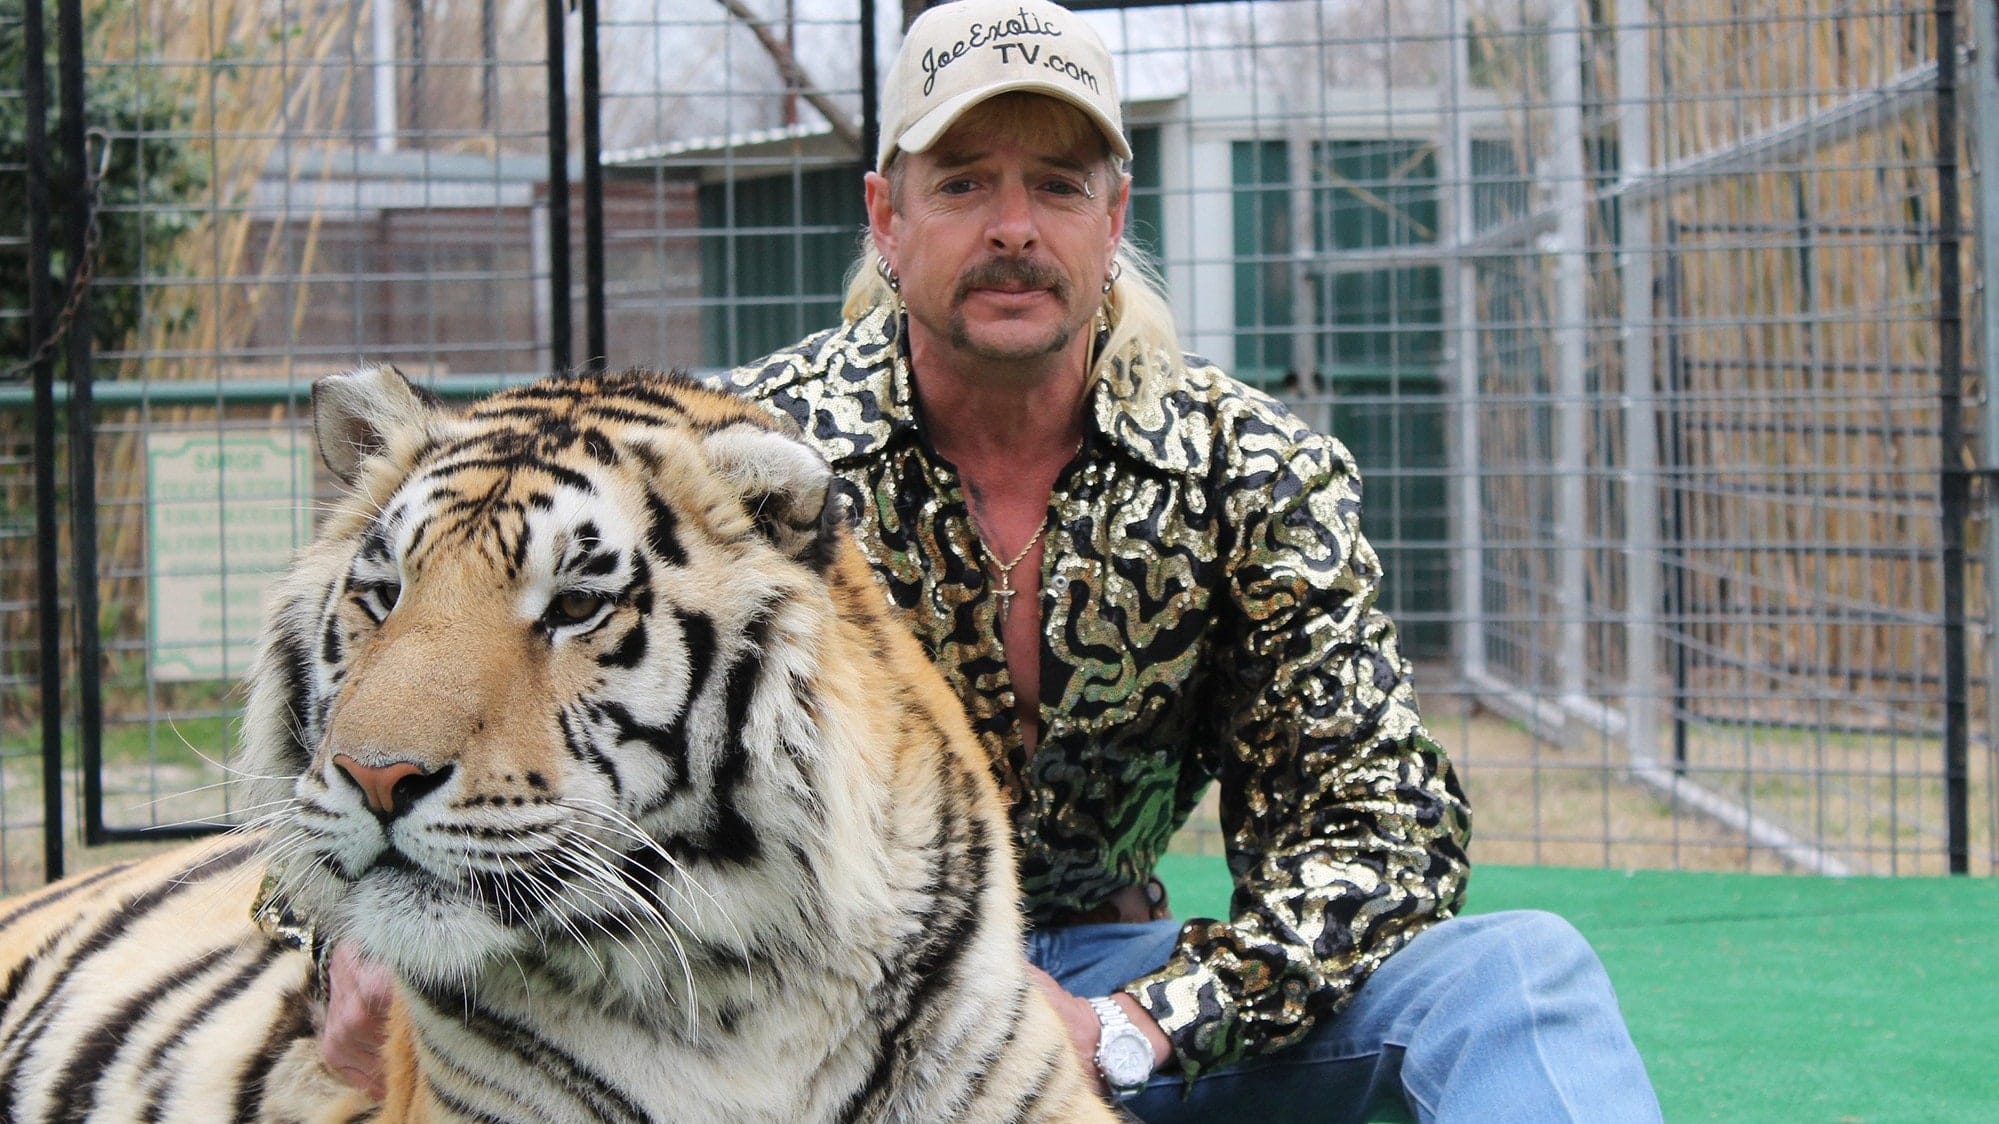 “Tiger King” estrenará temporada 2 este año (con su protagonista en la cárcel)